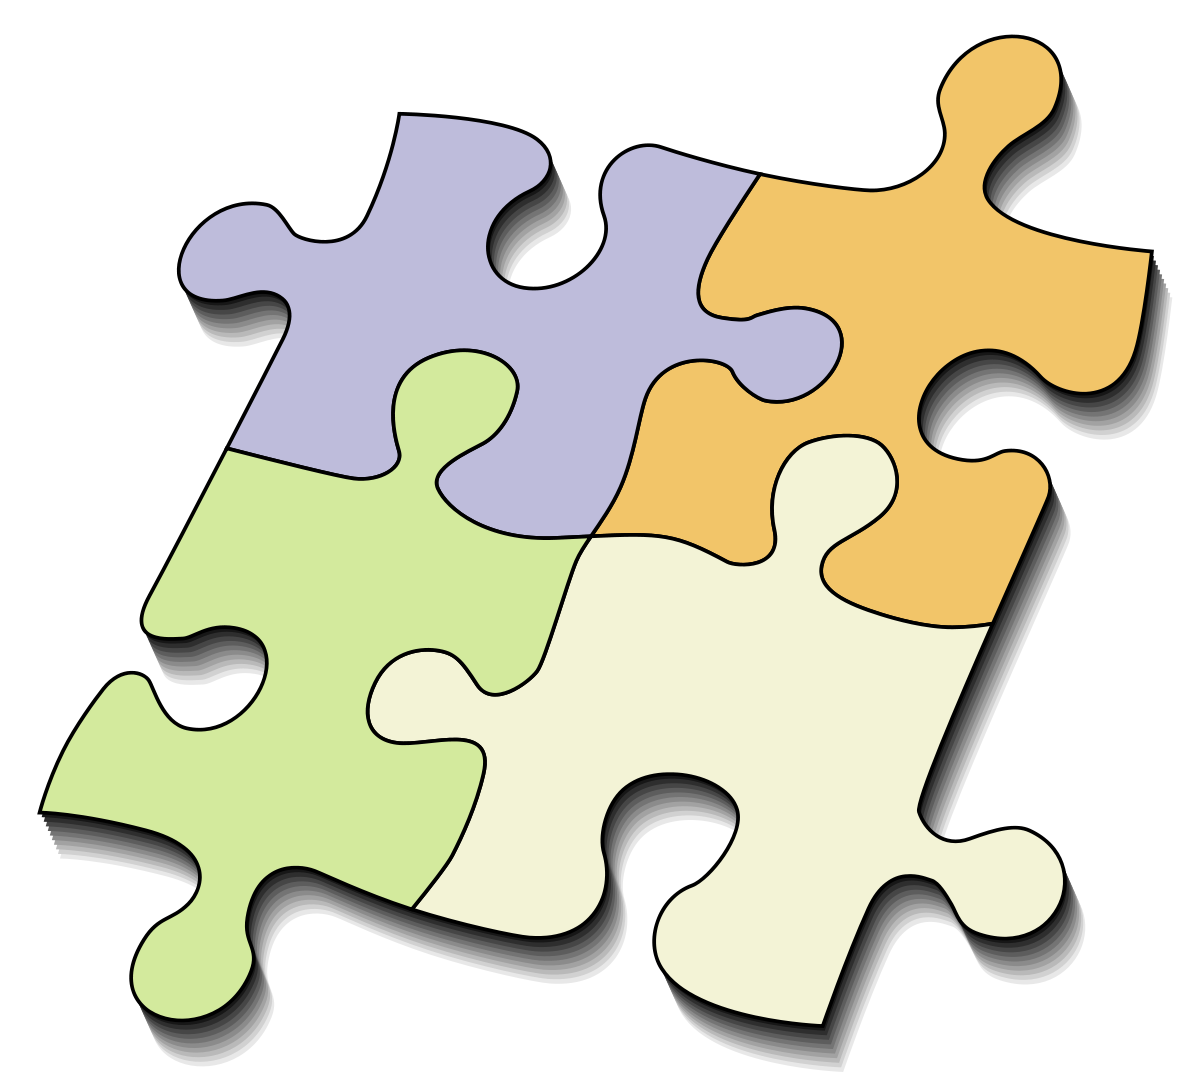 Jig puzzle pieces